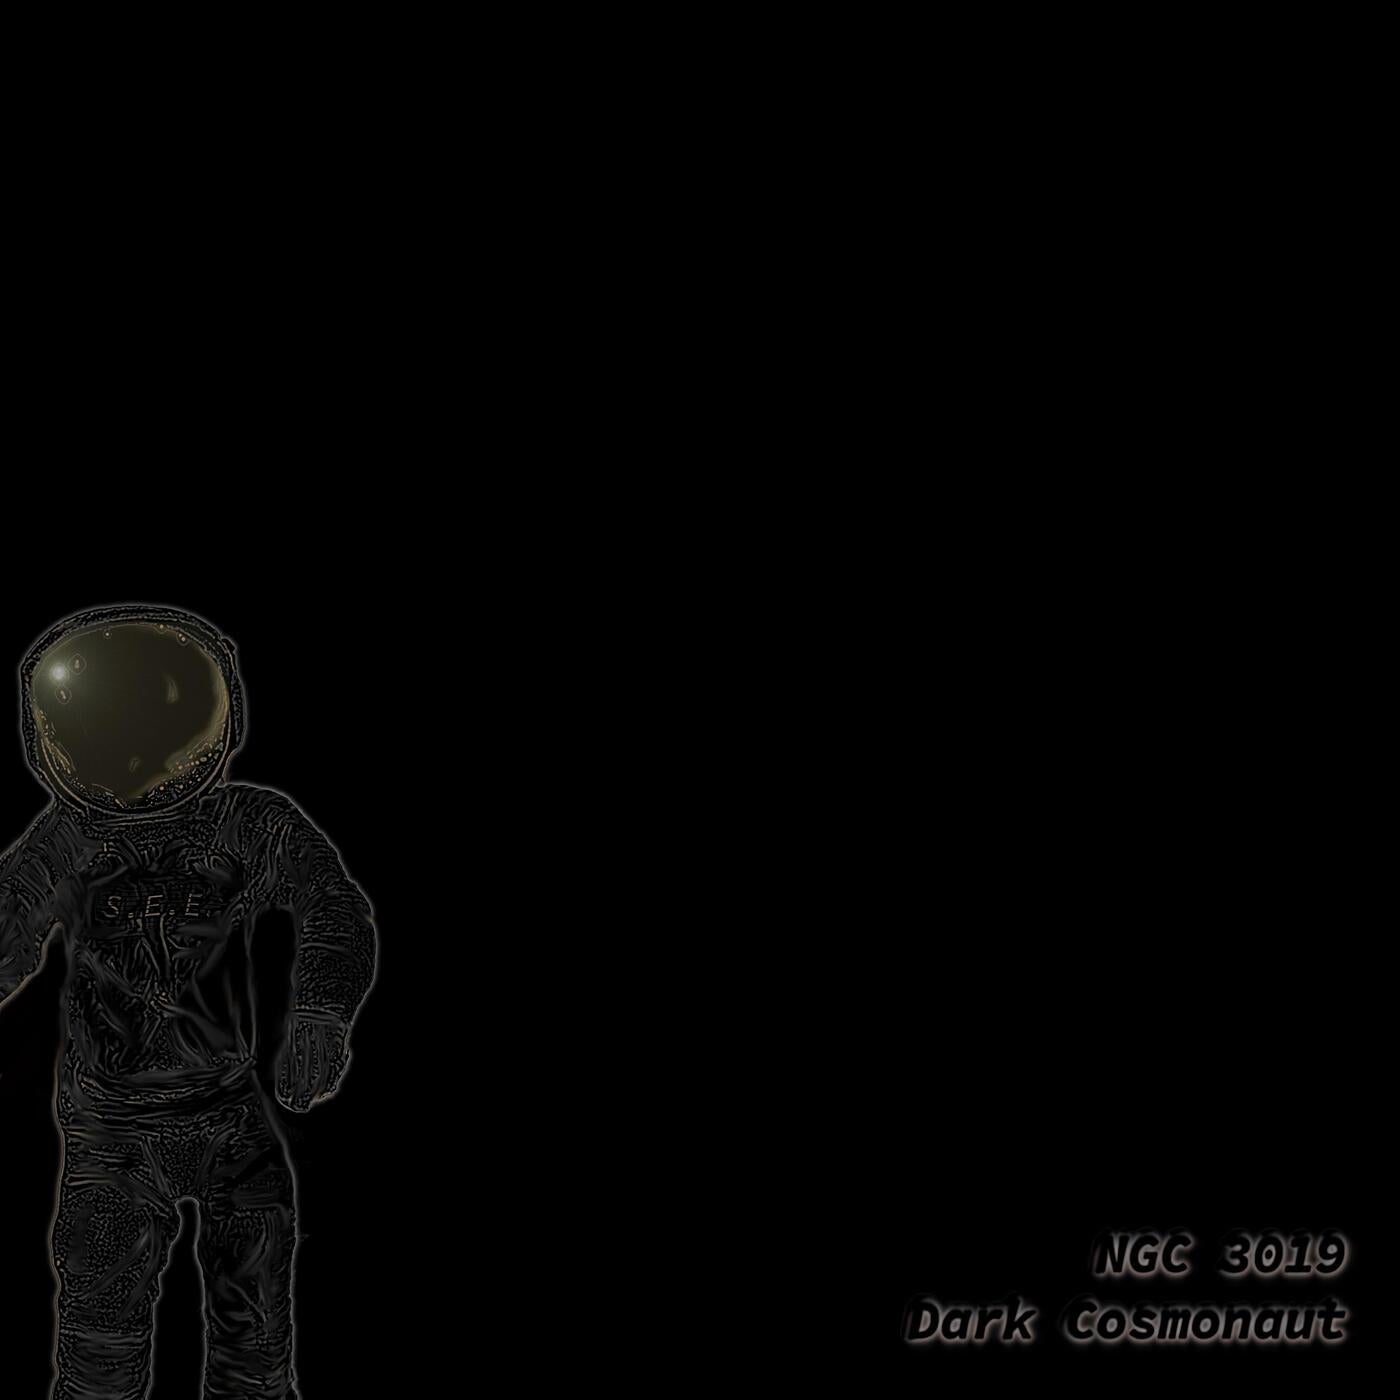 Dark Cosmonaut